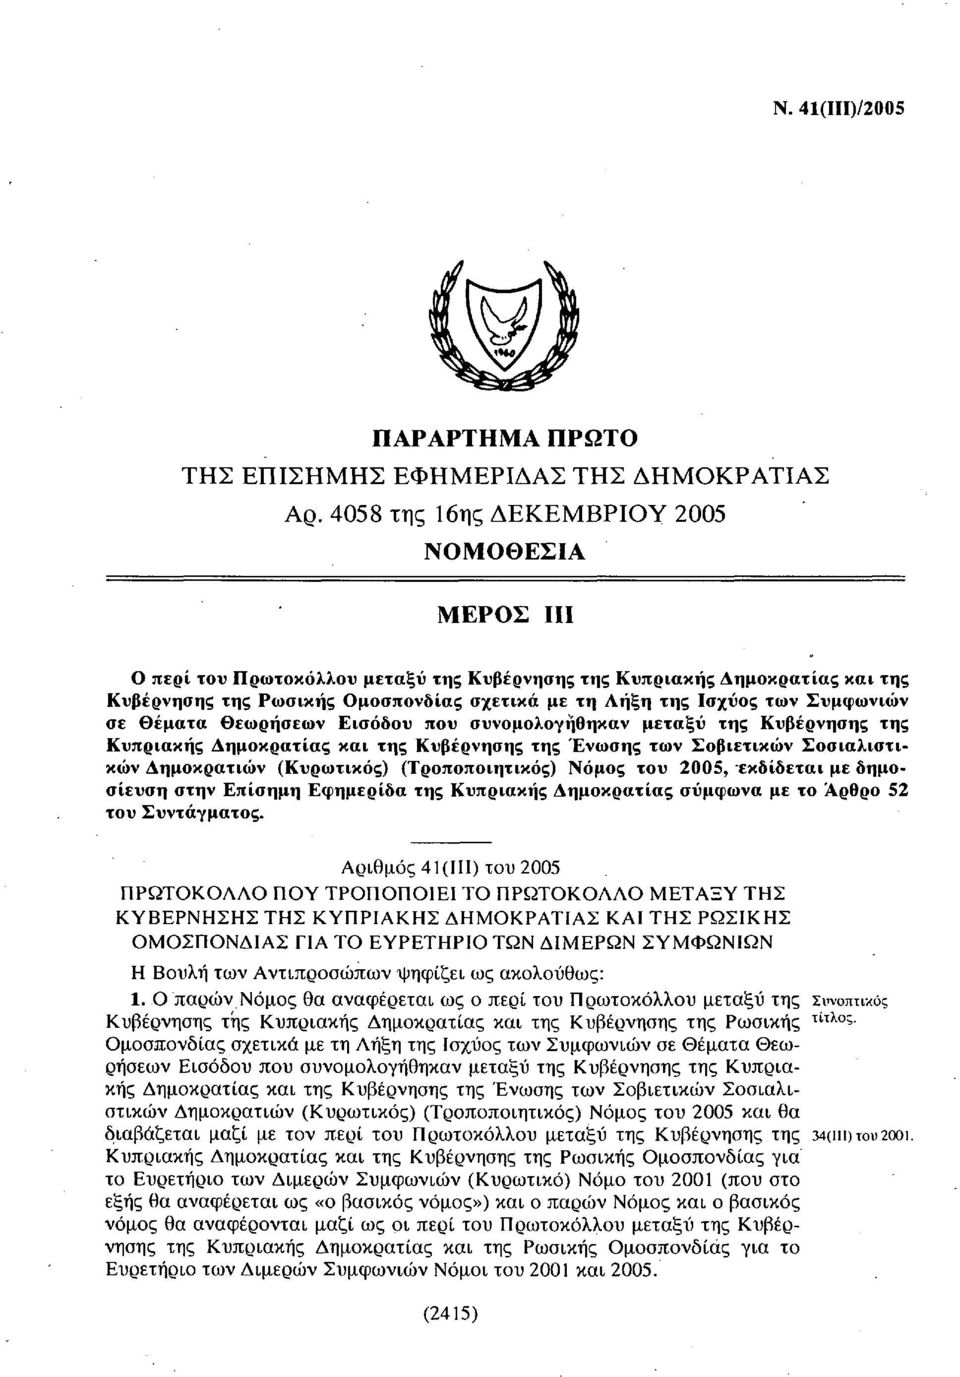 Συμφωνιών σε θέματα Θεωρήσεων Εισόδου που συνομολογήθηκαν μεταξύ της Κυβέρνησης της Κυπριακής Δημοκρατίας και της Κυβέρνησης της Ένωσης των Σοβιετικών Σοσιαλιστικών Δημοκρατιών (Κυρωτικός)